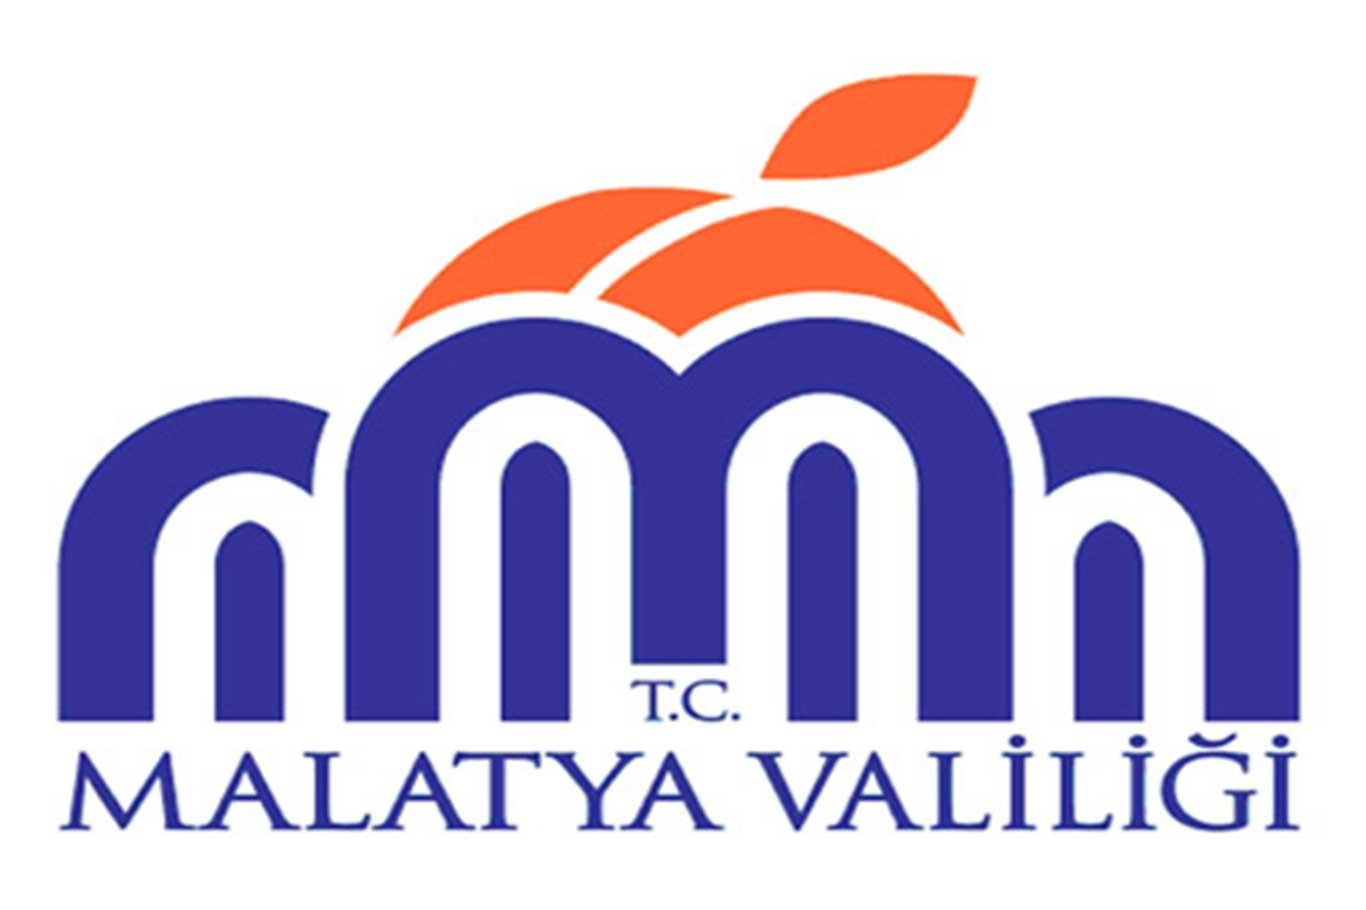 Malatya'da Covid-19 nedeniyle karantinaya alınan mahalle sayısı giderek artıyor